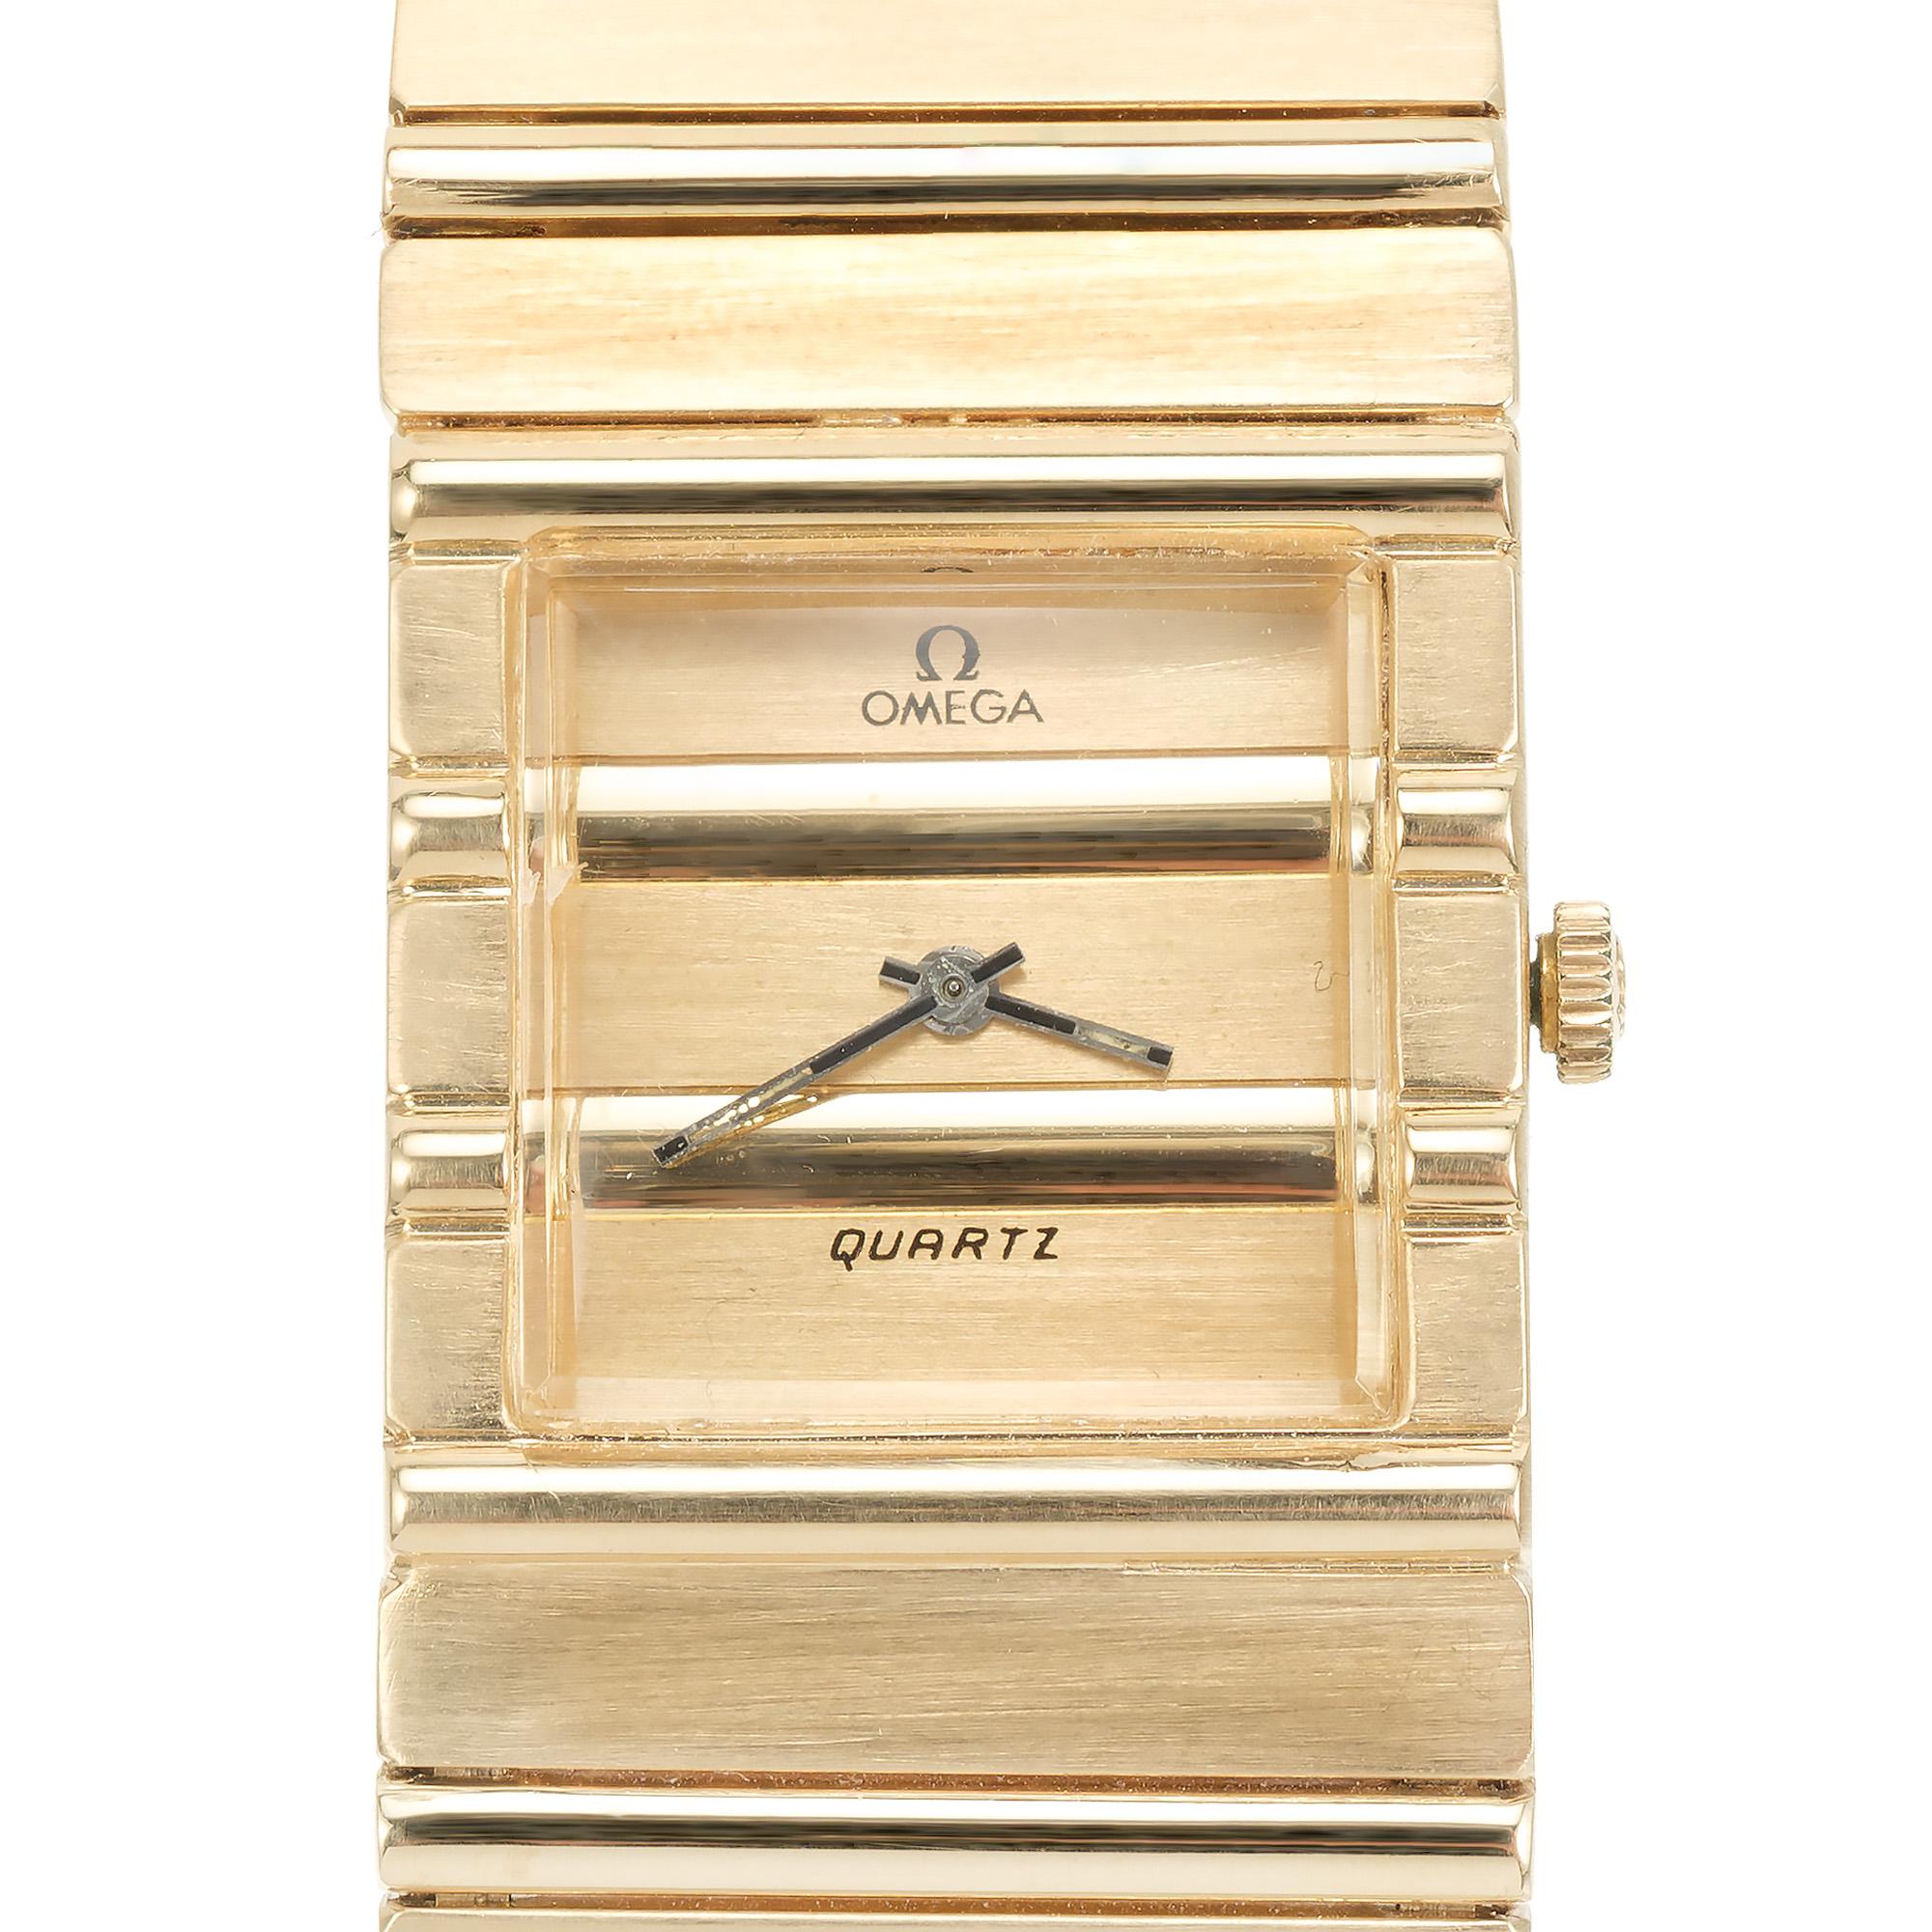 Omega King Midas 18k Gelbgold 8-Zoll-Armbanduhr. CIRCA 1960-1970 produzierte Omega diese Herrenuhr als Antwort auf die beliebte Rolex King Midas der 1960er Jahre. Abwechselnd gebürstete und polierte Glieder und ein markantes, quadratisches Gehäuse